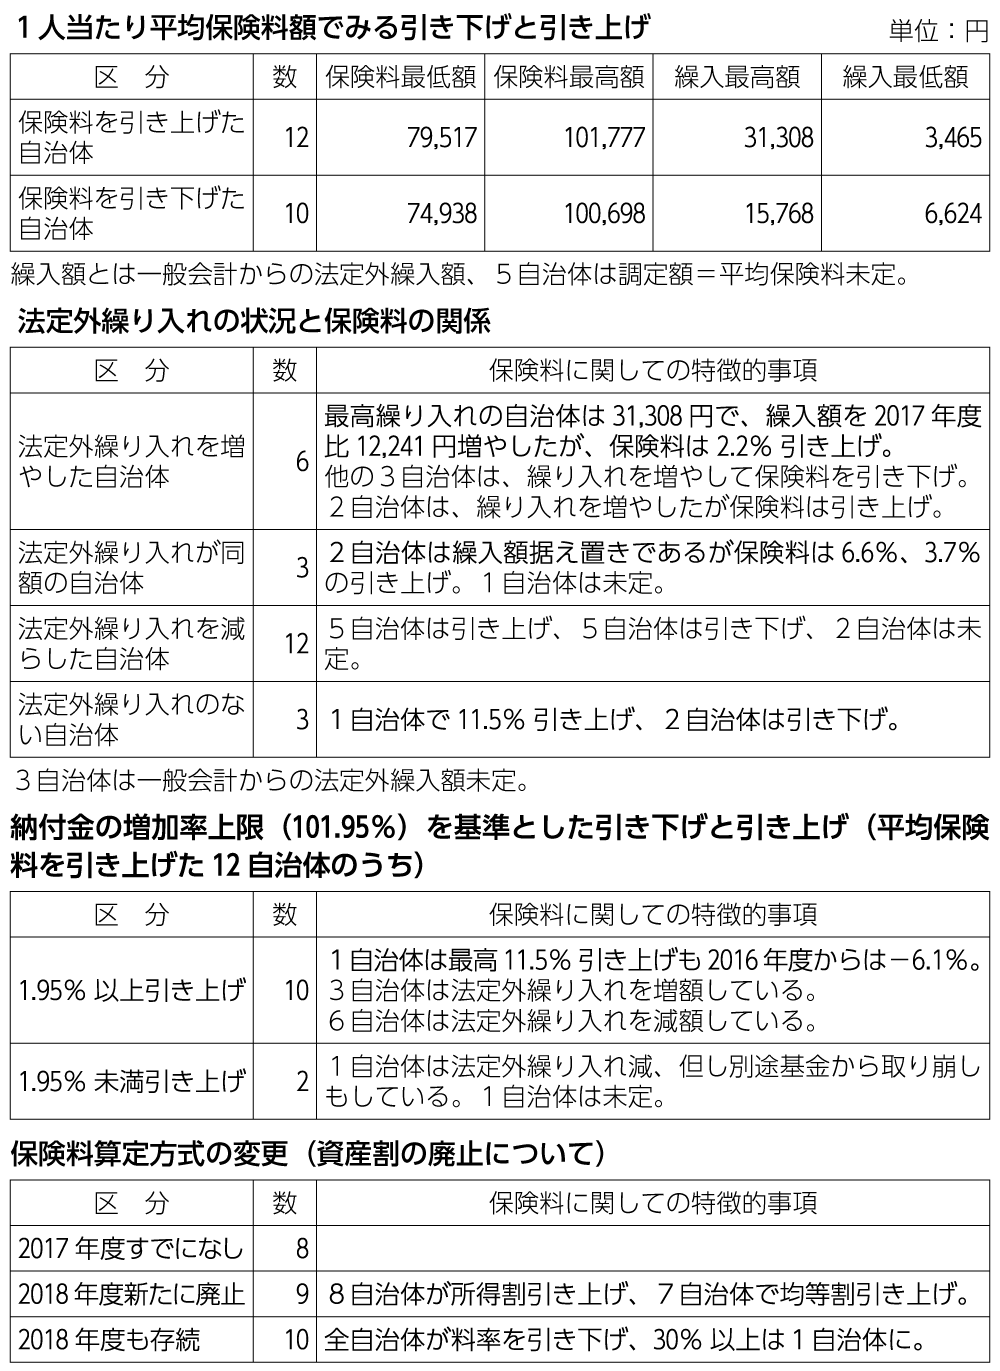 表　2018年度の愛知県27市町村に見る国保の法定外繰り入れと保険料の状況（対2017年度比）